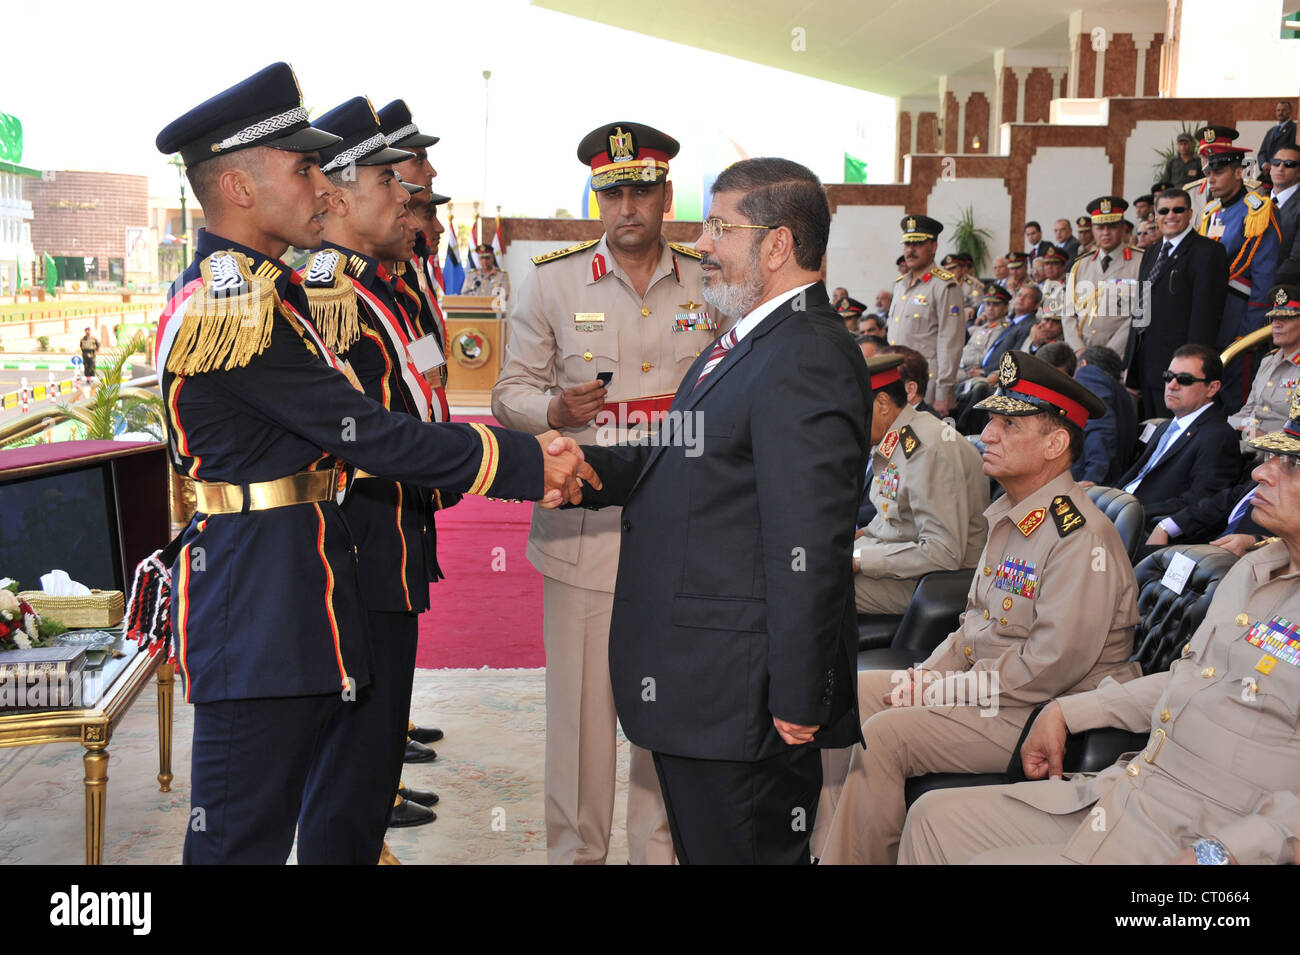 El Presidente egipcio Morsi asiste a la graduación de Aviación Civil cermonies con jefe militar Hussein Tantawi y otras personalidades. Foto de stock